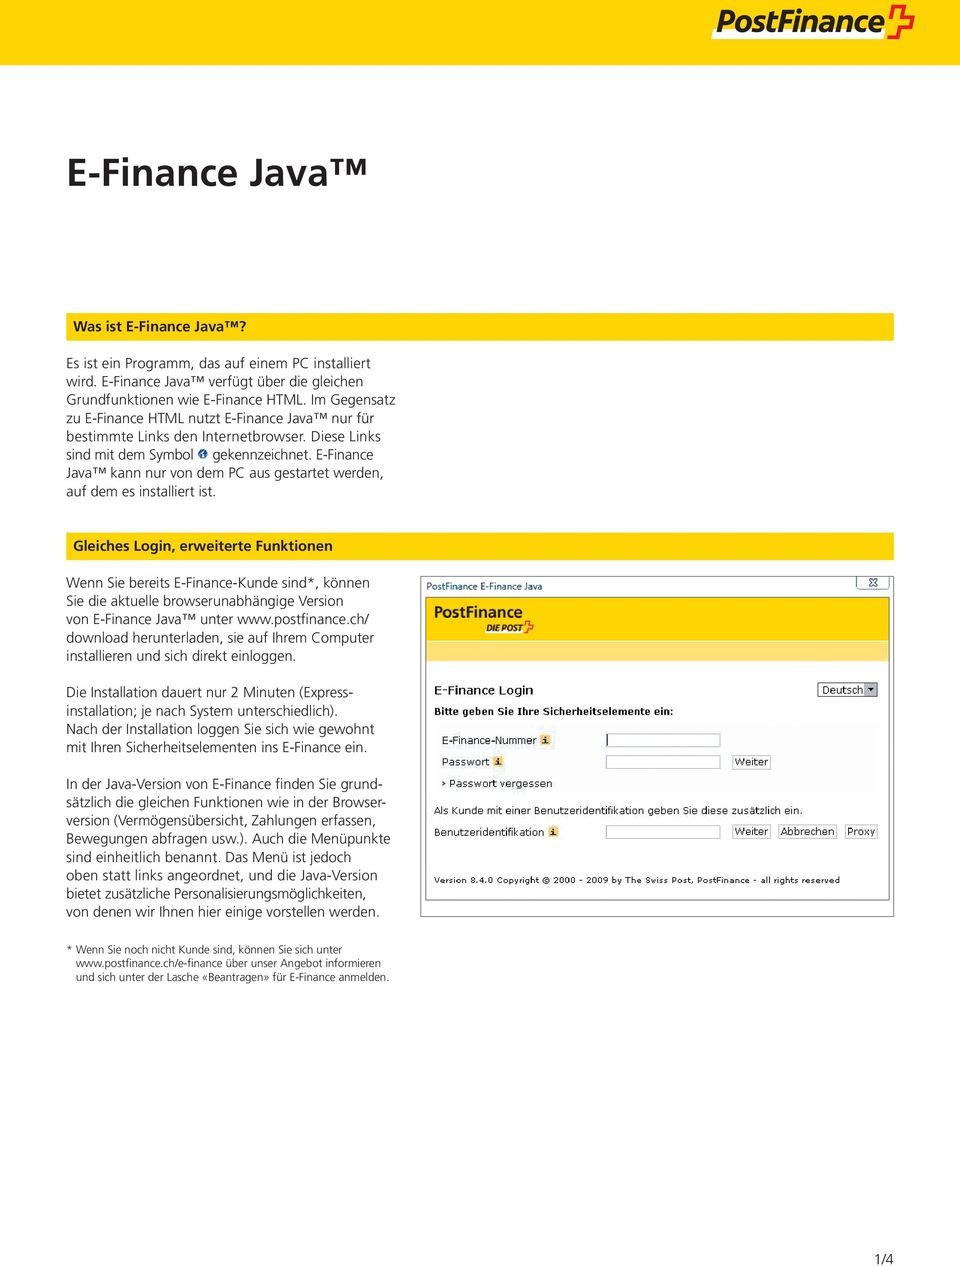 E-Finance Java kann nur von dem PC aus gestartet werden, auf dem es installiert ist.